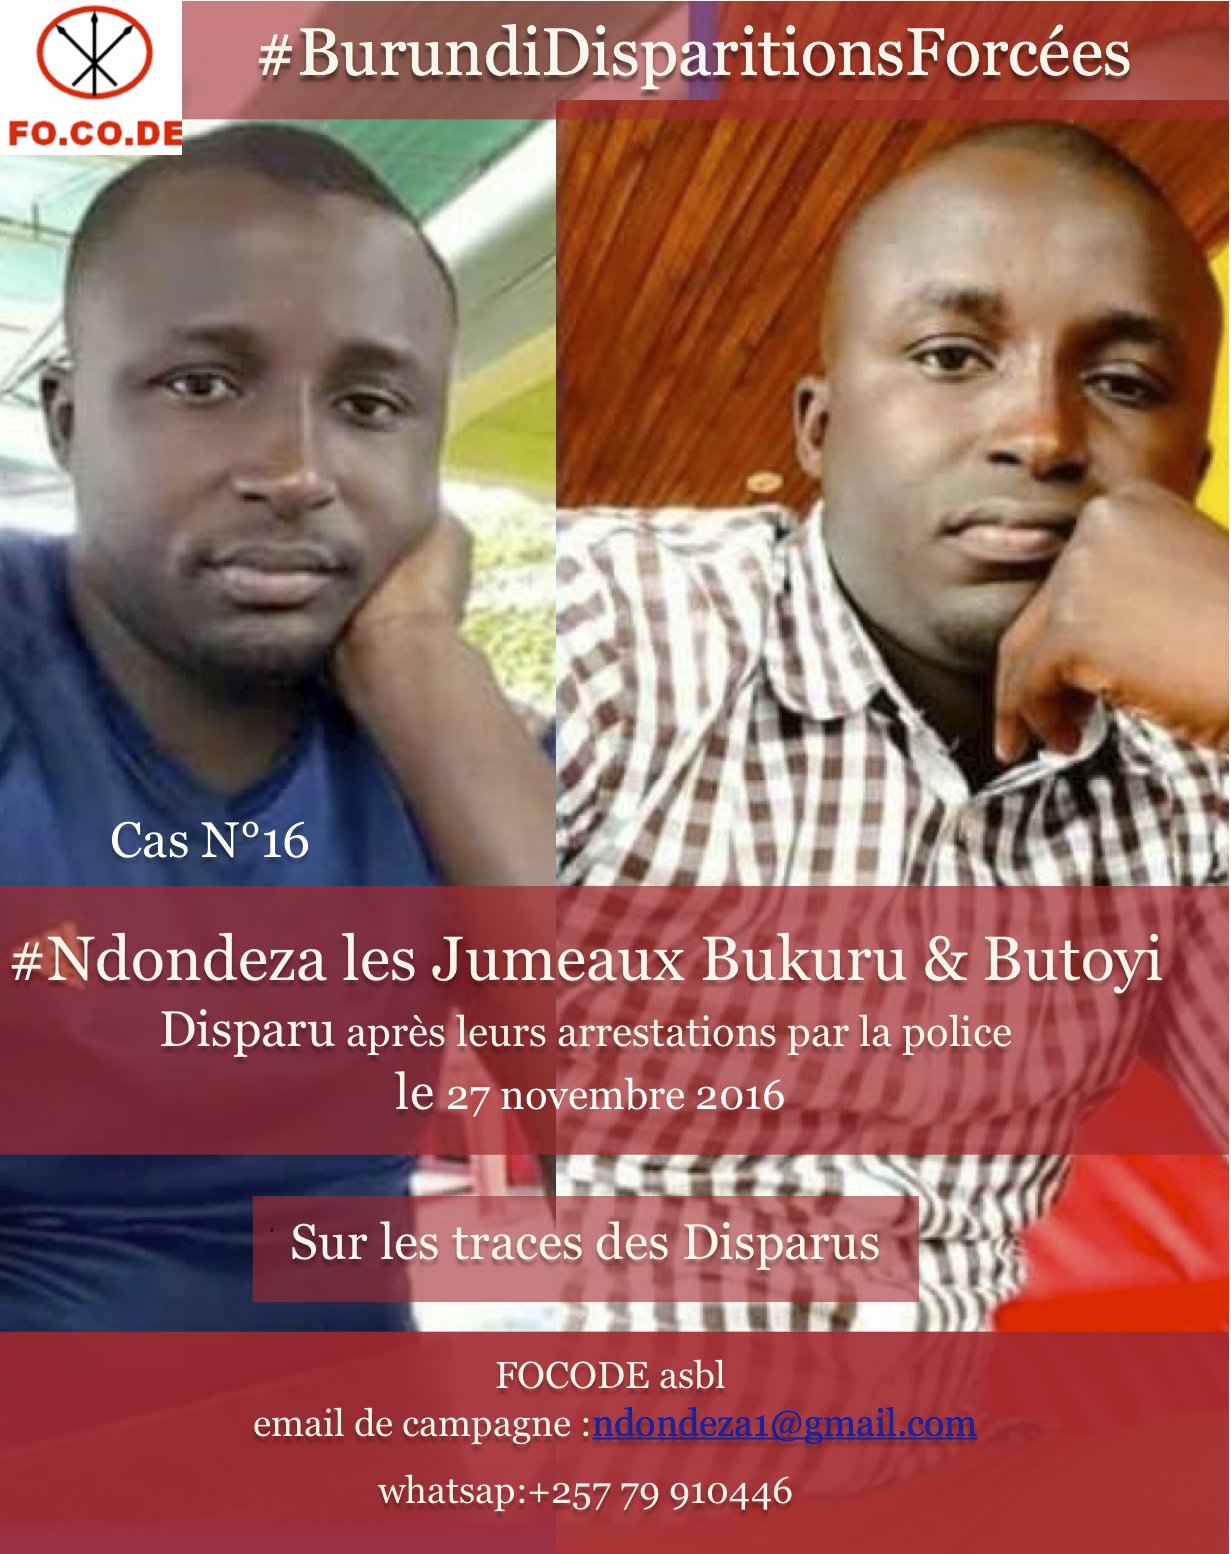 Les autorités burundaises doivent faire la lumière sur la disparition forcée des jumeaux BUKURU SHABANI et BUTOYI SHABANI  introuvables depuis le 27 Novembre 2016